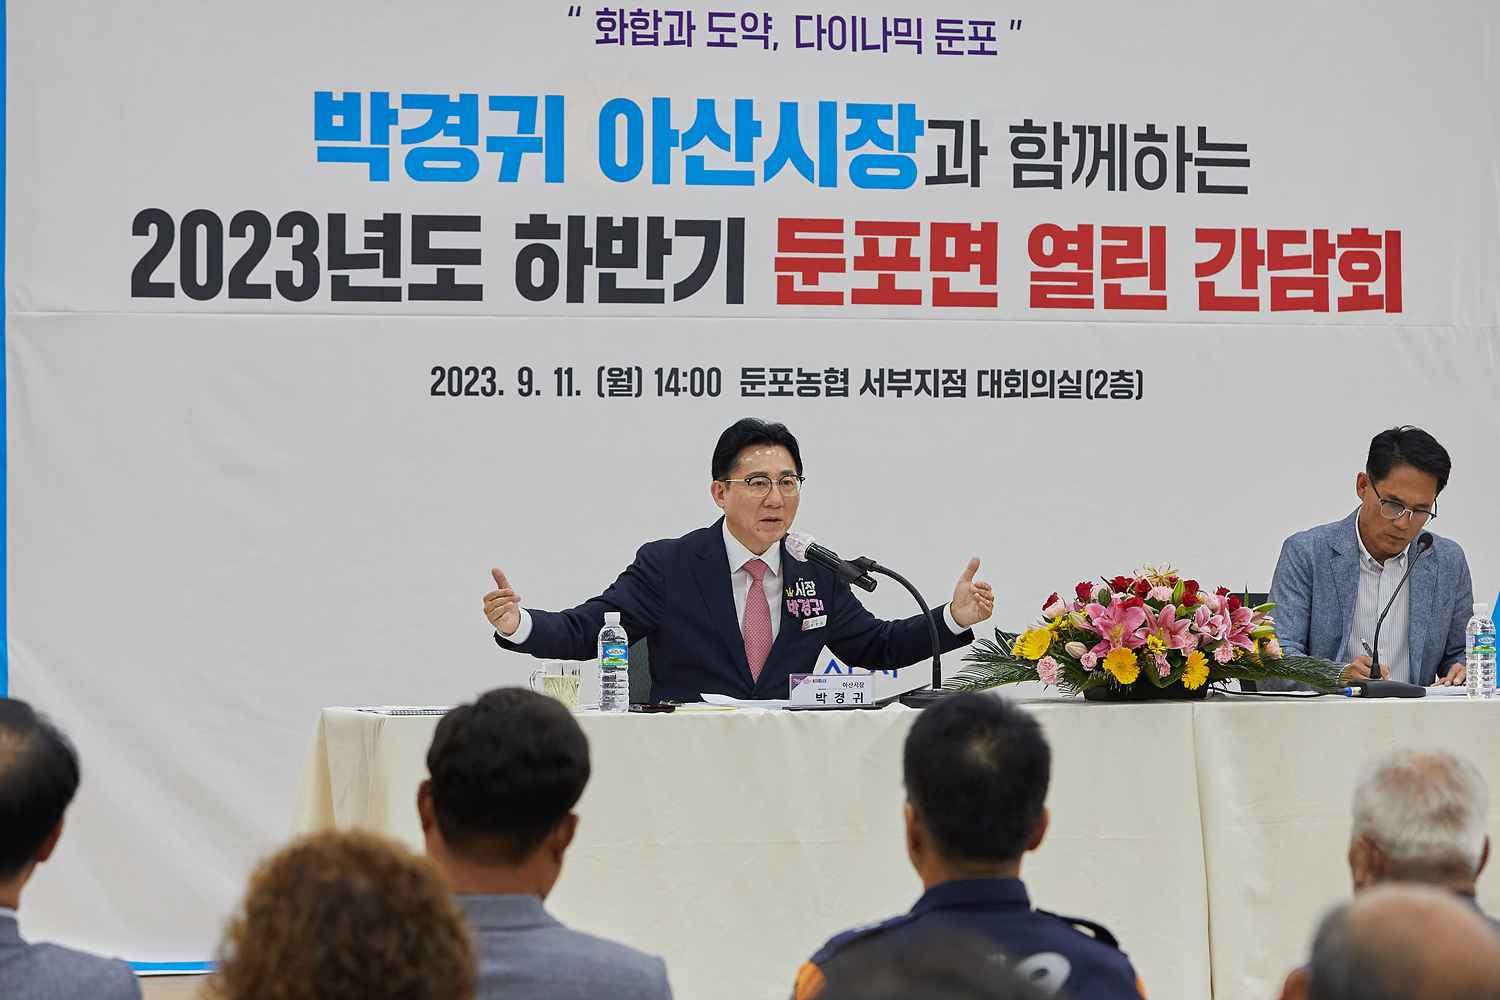 박경귀 아산시장 “둔포는 거대 프로젝트 주 무대, 읍 승격으로 동력 키울 것”  관련사진